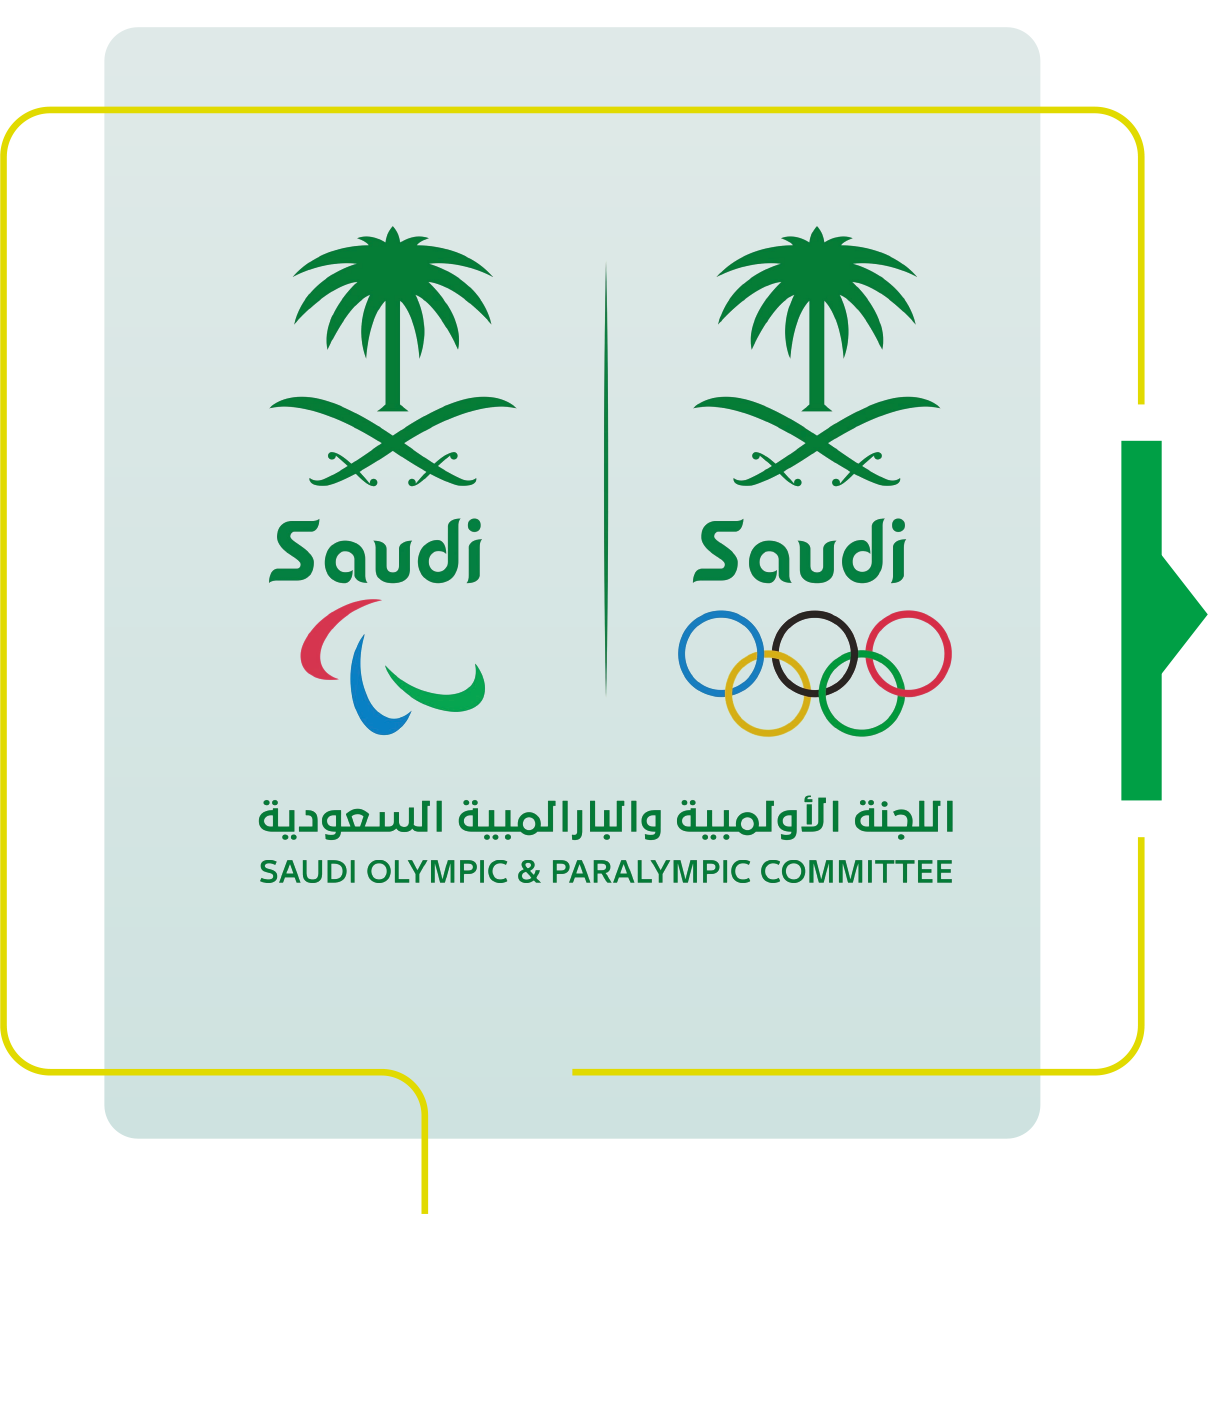 اللجنة الأولمبية البارلمبية السعودية